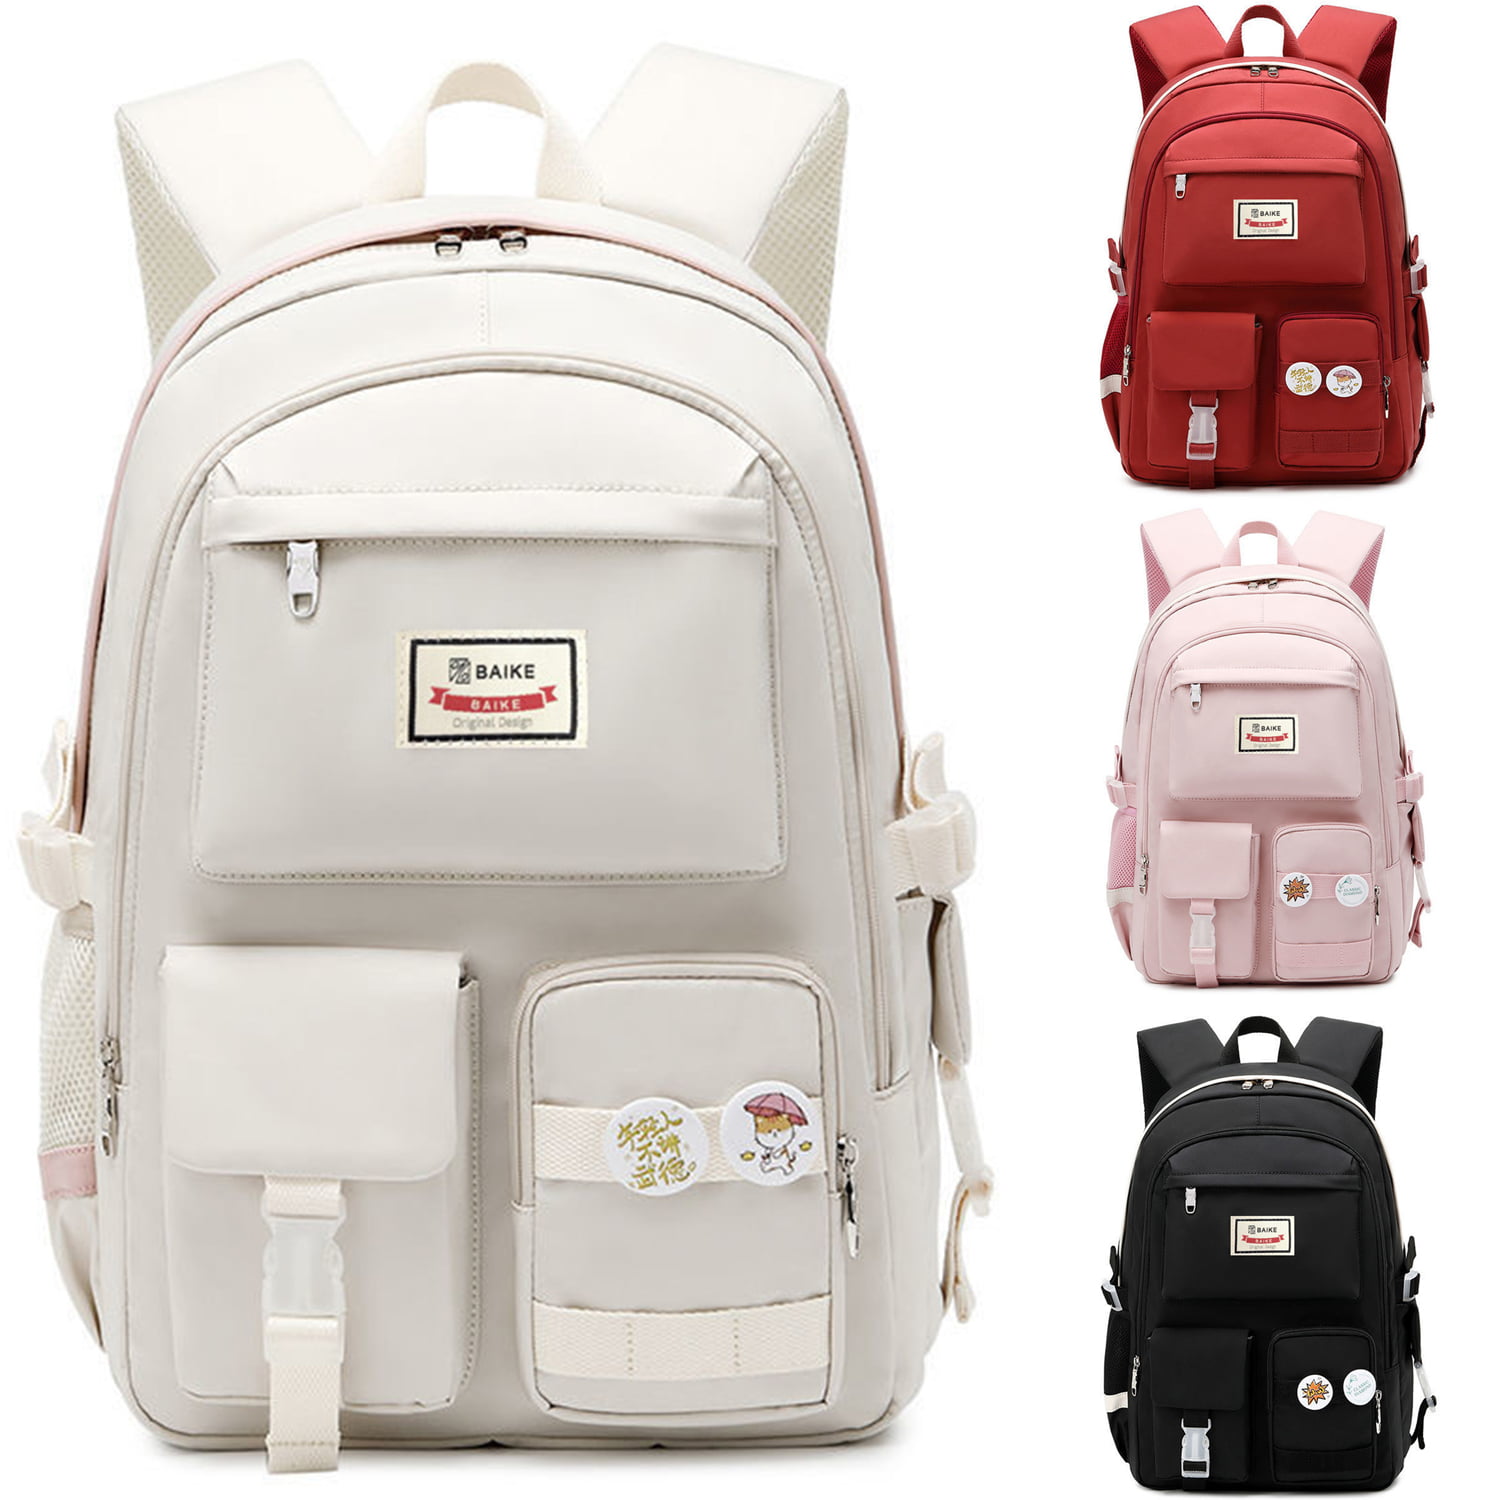 Kawaii Backpack - Waterproof School Bag